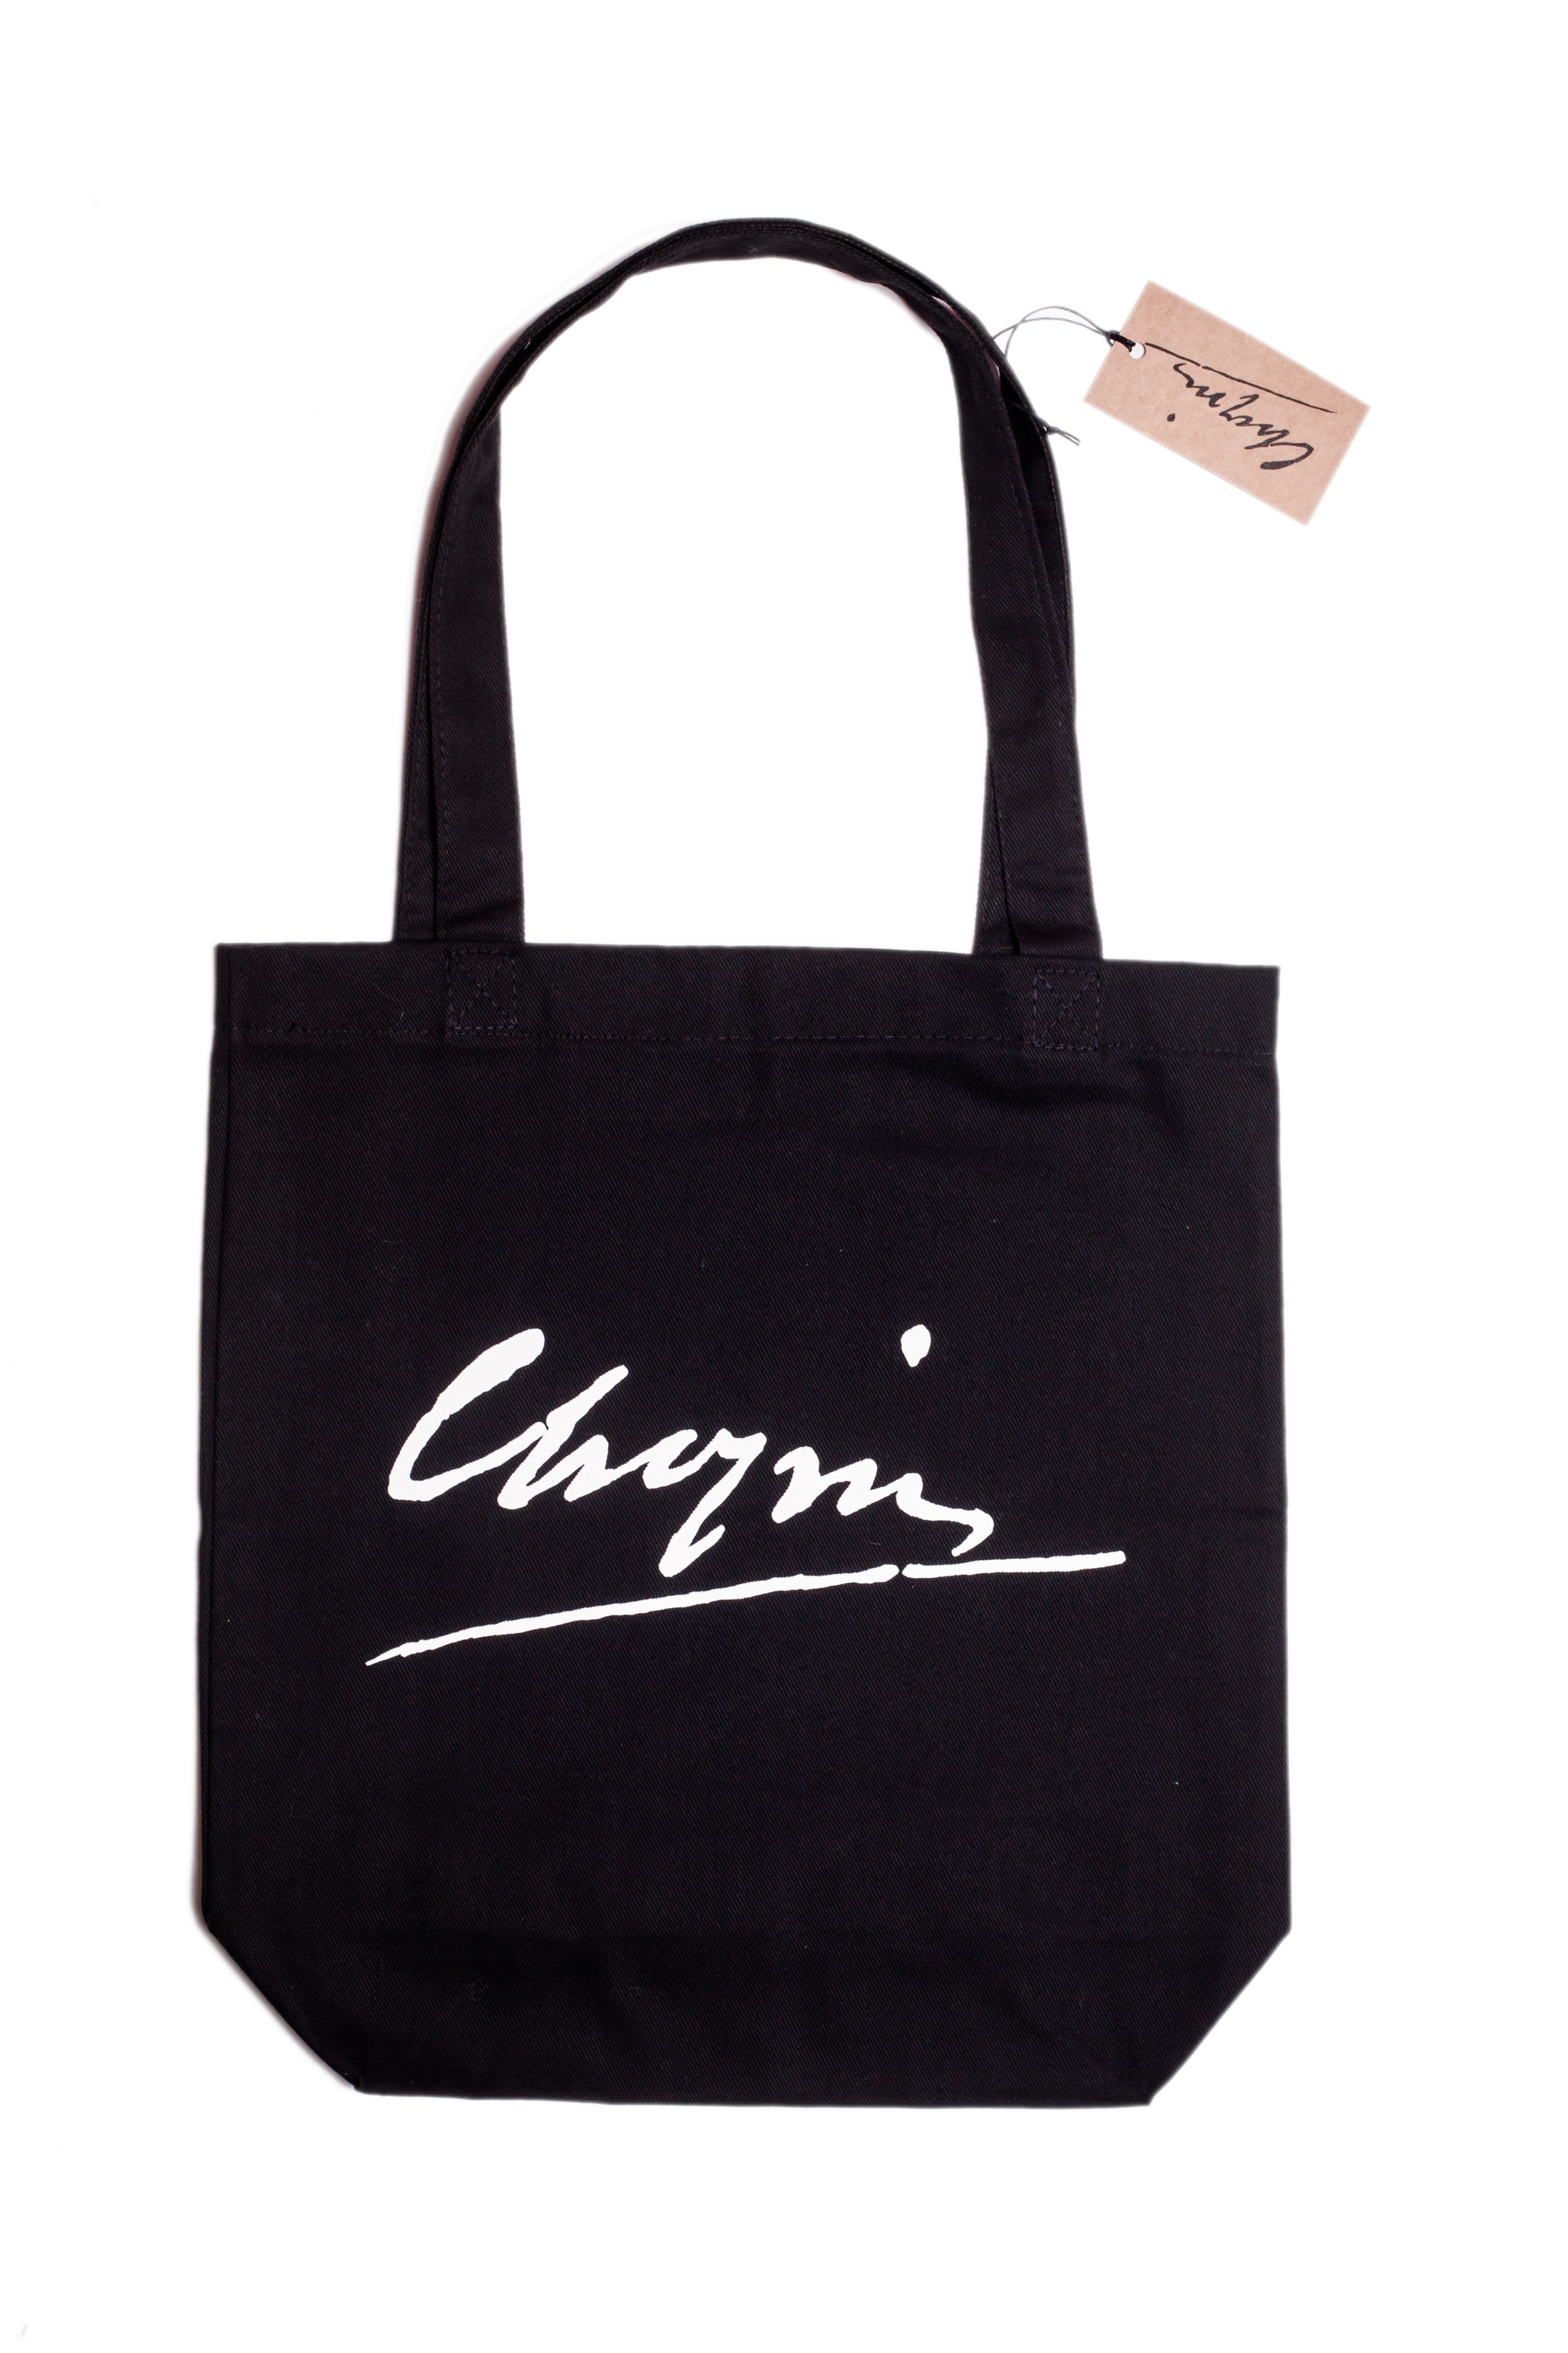 Chopin Bag 1